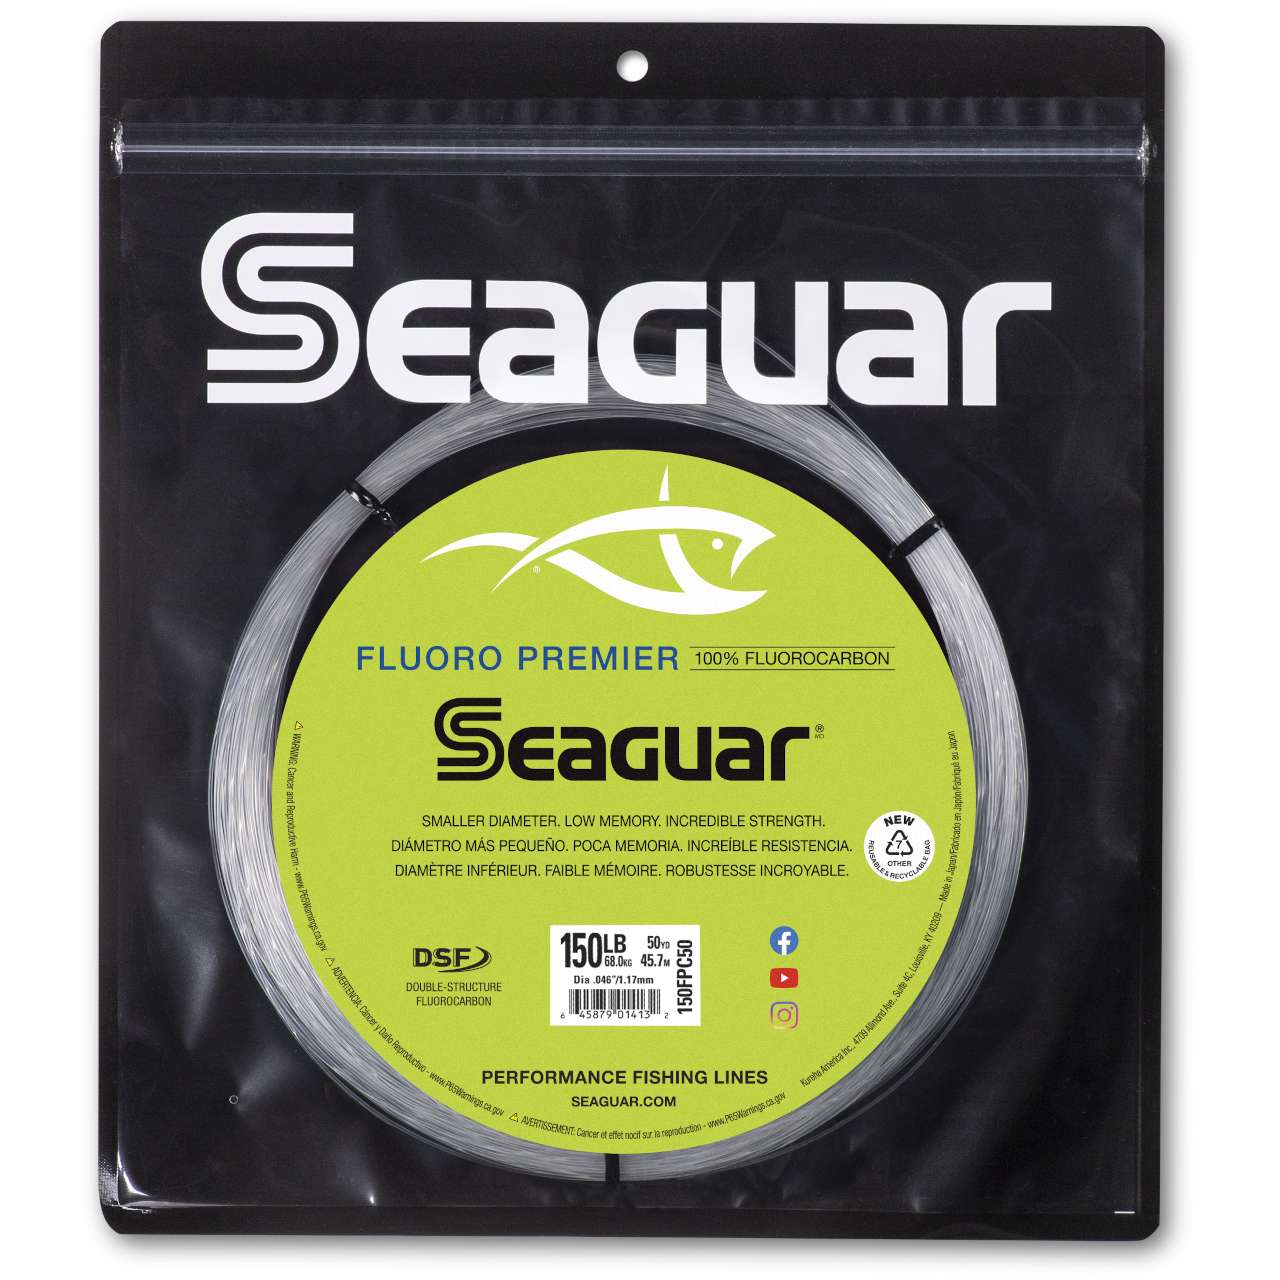 Seaguar 150 150m Fluorocarbon Line 150m Size 1.5 6lb 0775 